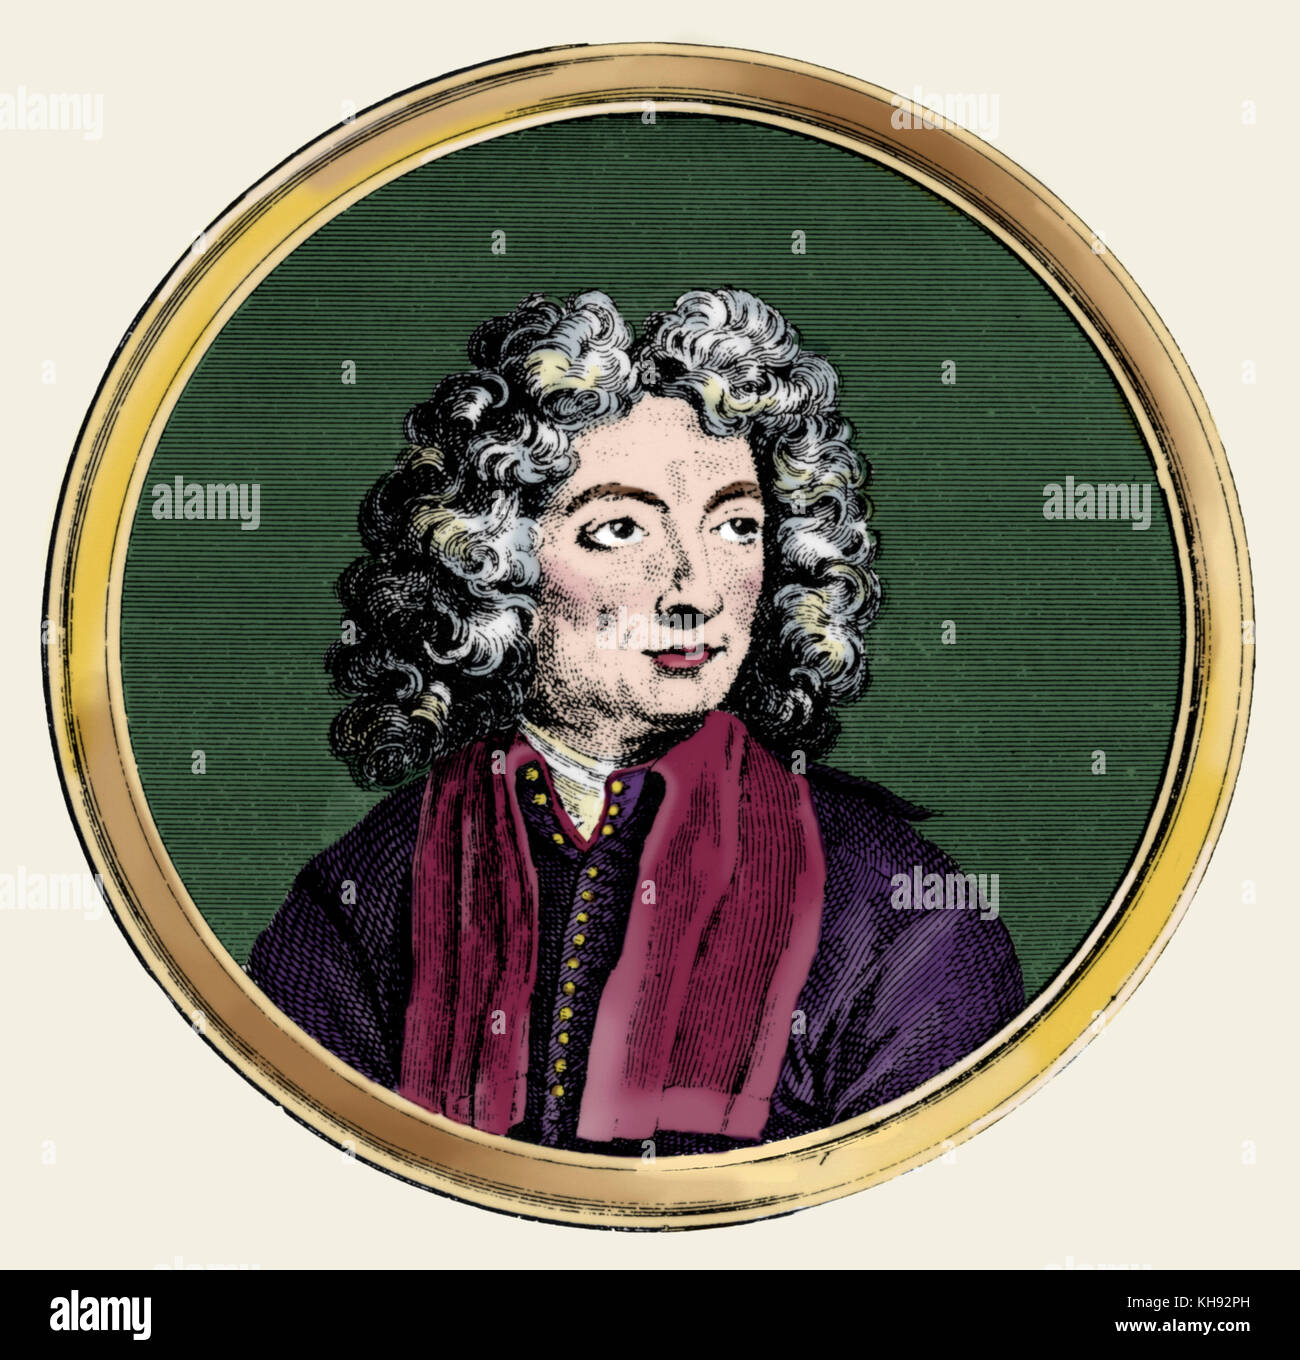 Arcangelo Corelli portrait. Compositeur italien et violoniste. 17 février 1653 - 8 janvier 1713 Banque D'Images